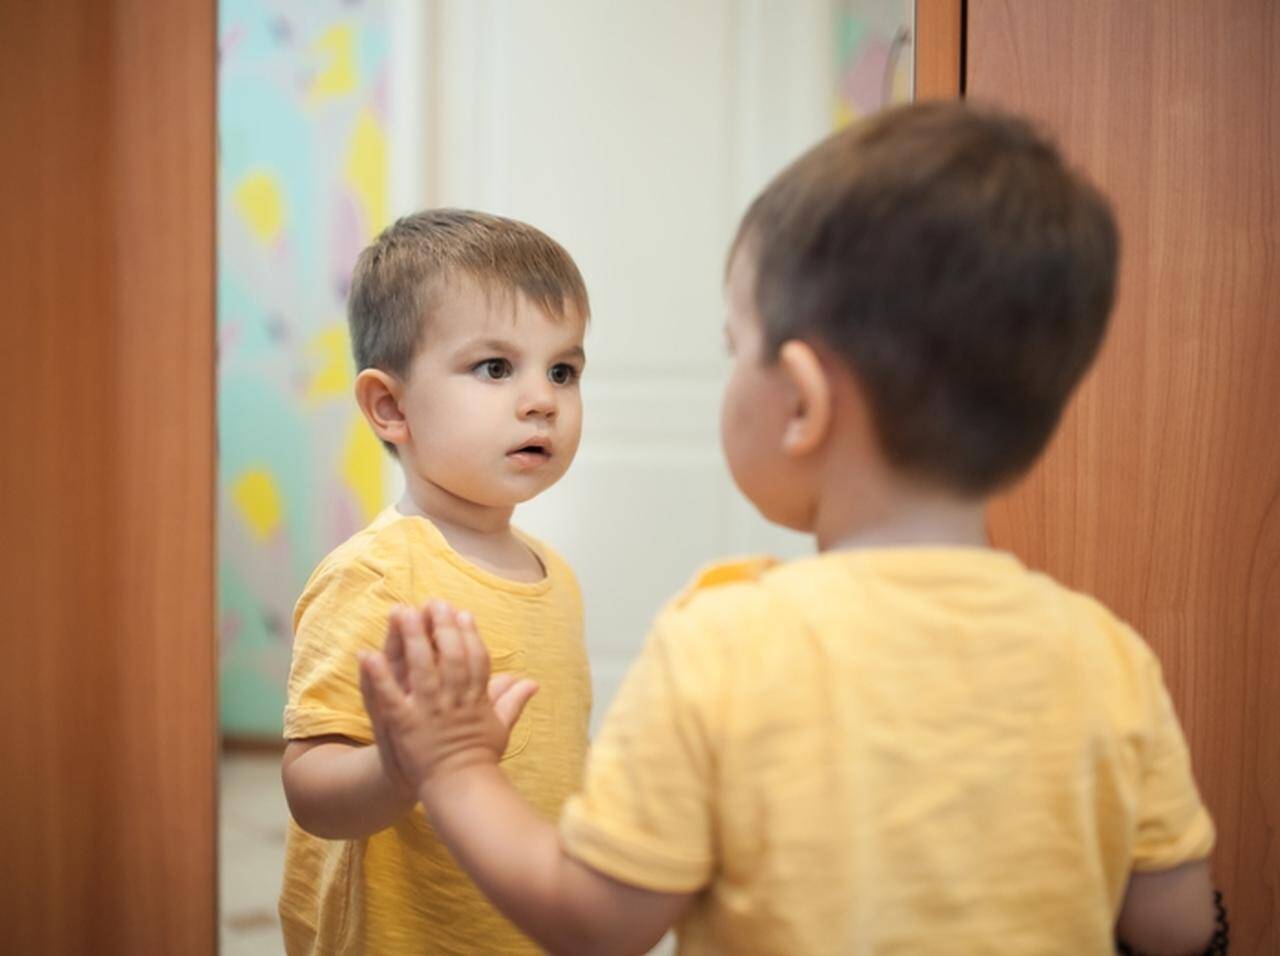 鏡に映る もう1人の少年 が勝手に動き出す 恐怖の映像 に鳥肌 18年8月25日 エキサイトニュース